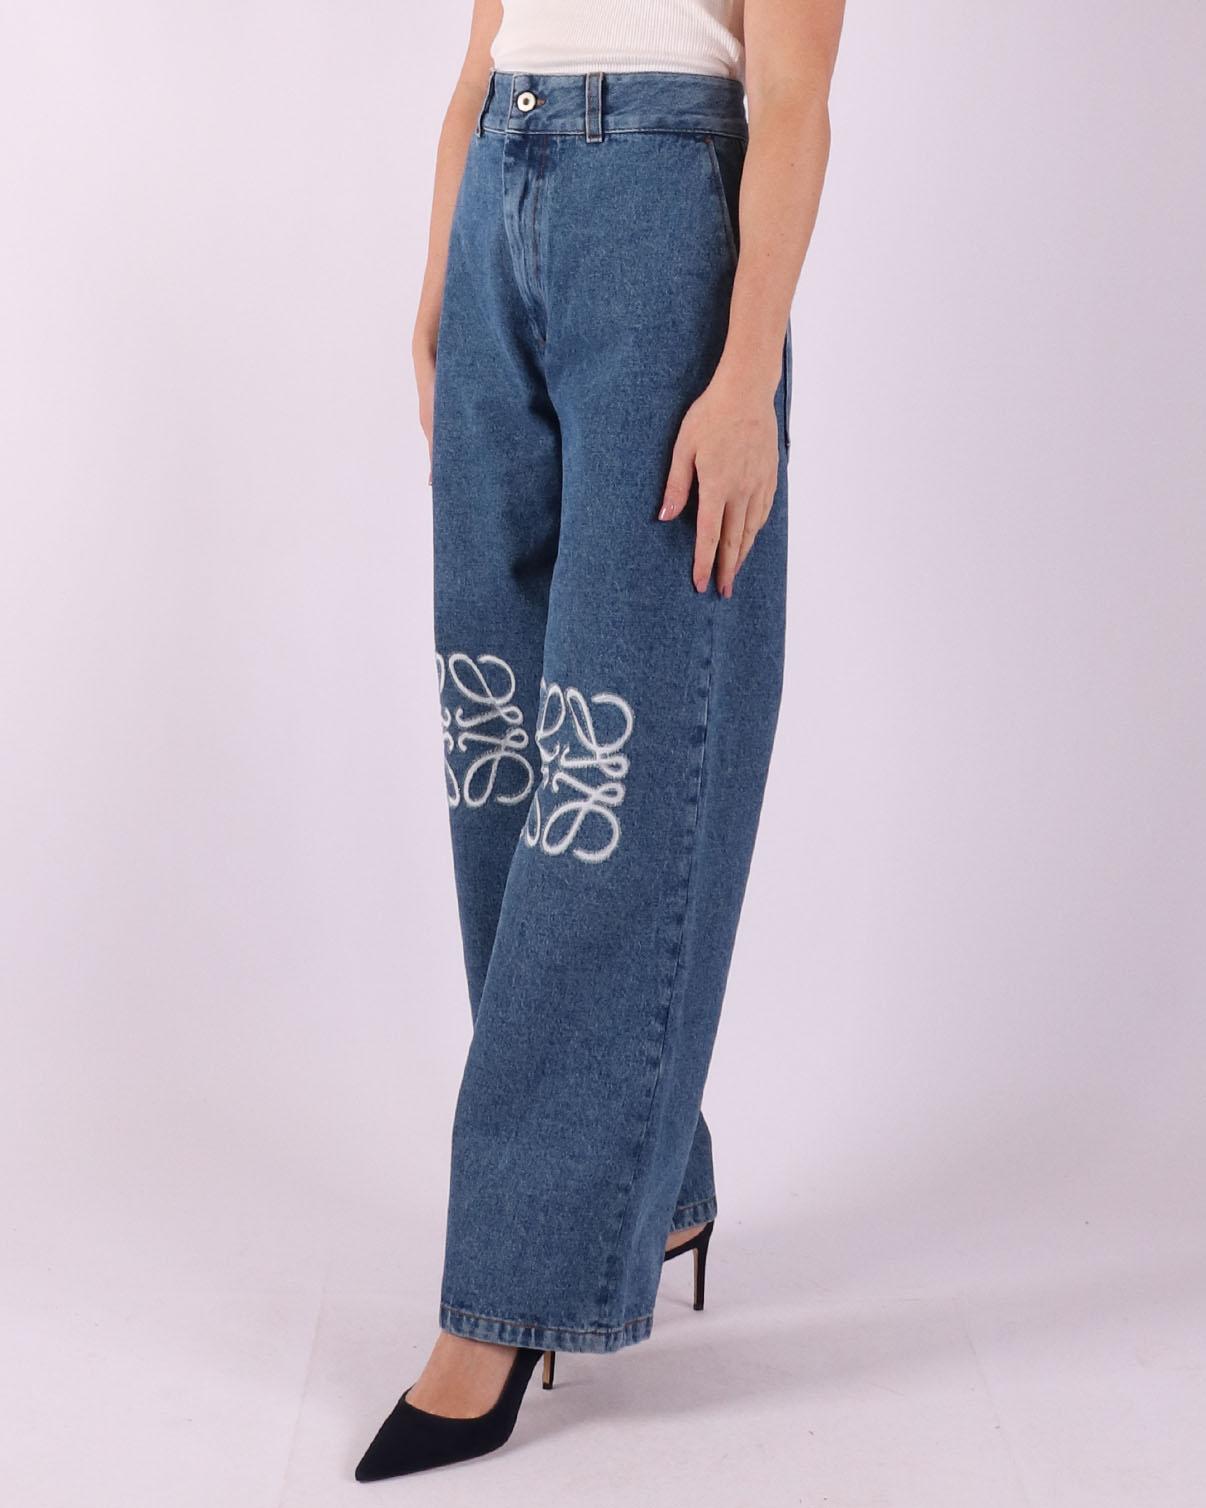 LOEWE Jeans met logo, in de kleur blauw, voor dames.